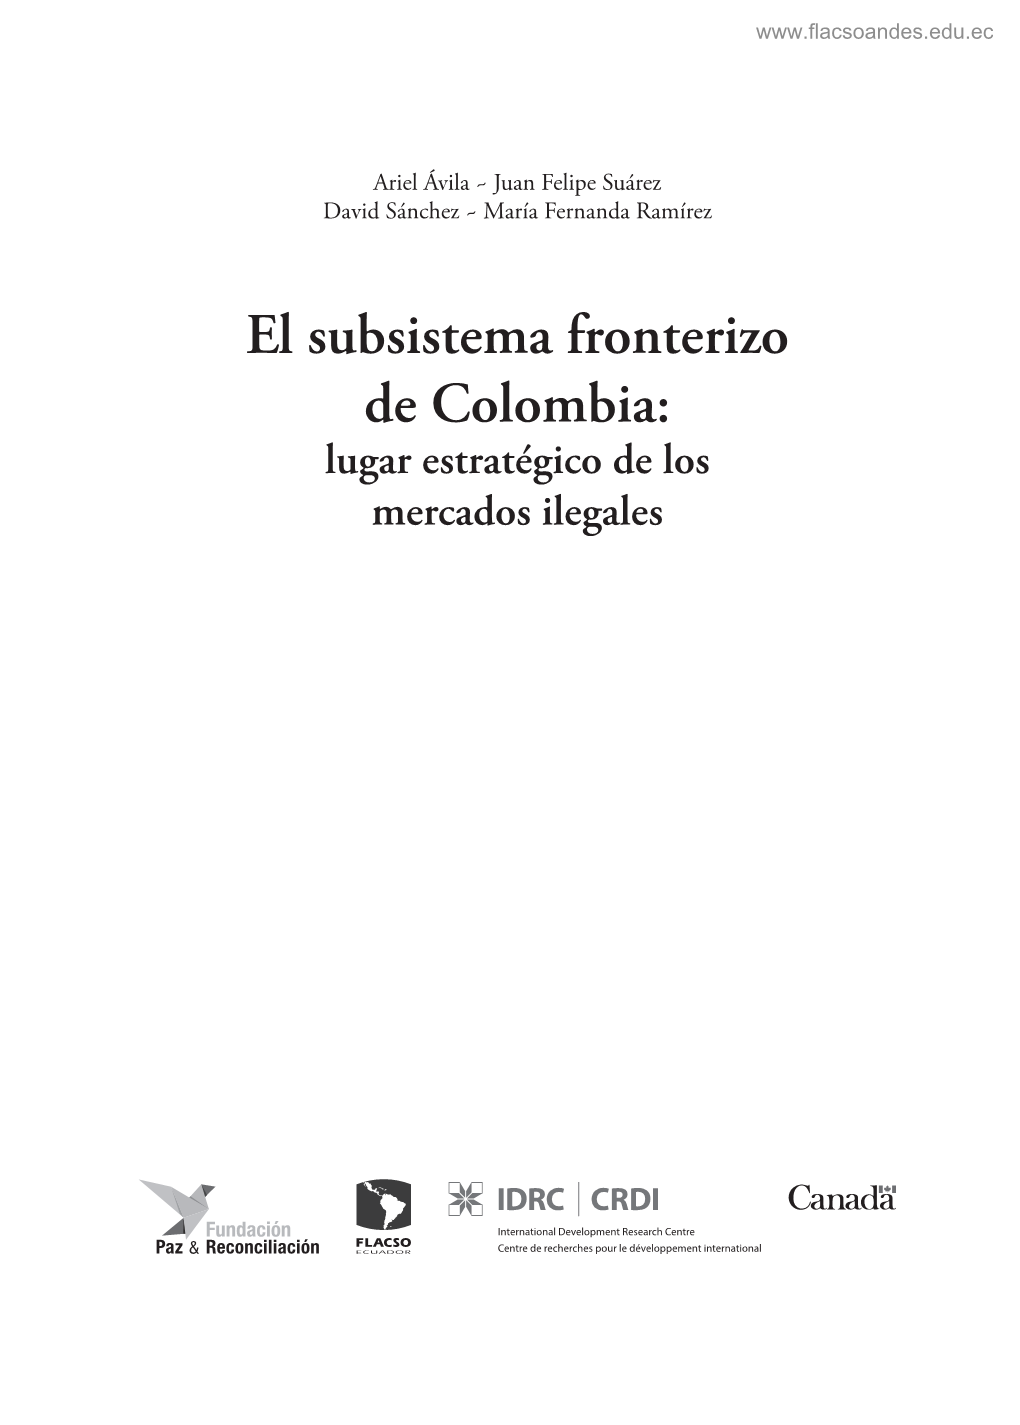 El Subsistema Fronterizo De Colombia: Lugar Estratégico De Los Mercados Ilegales